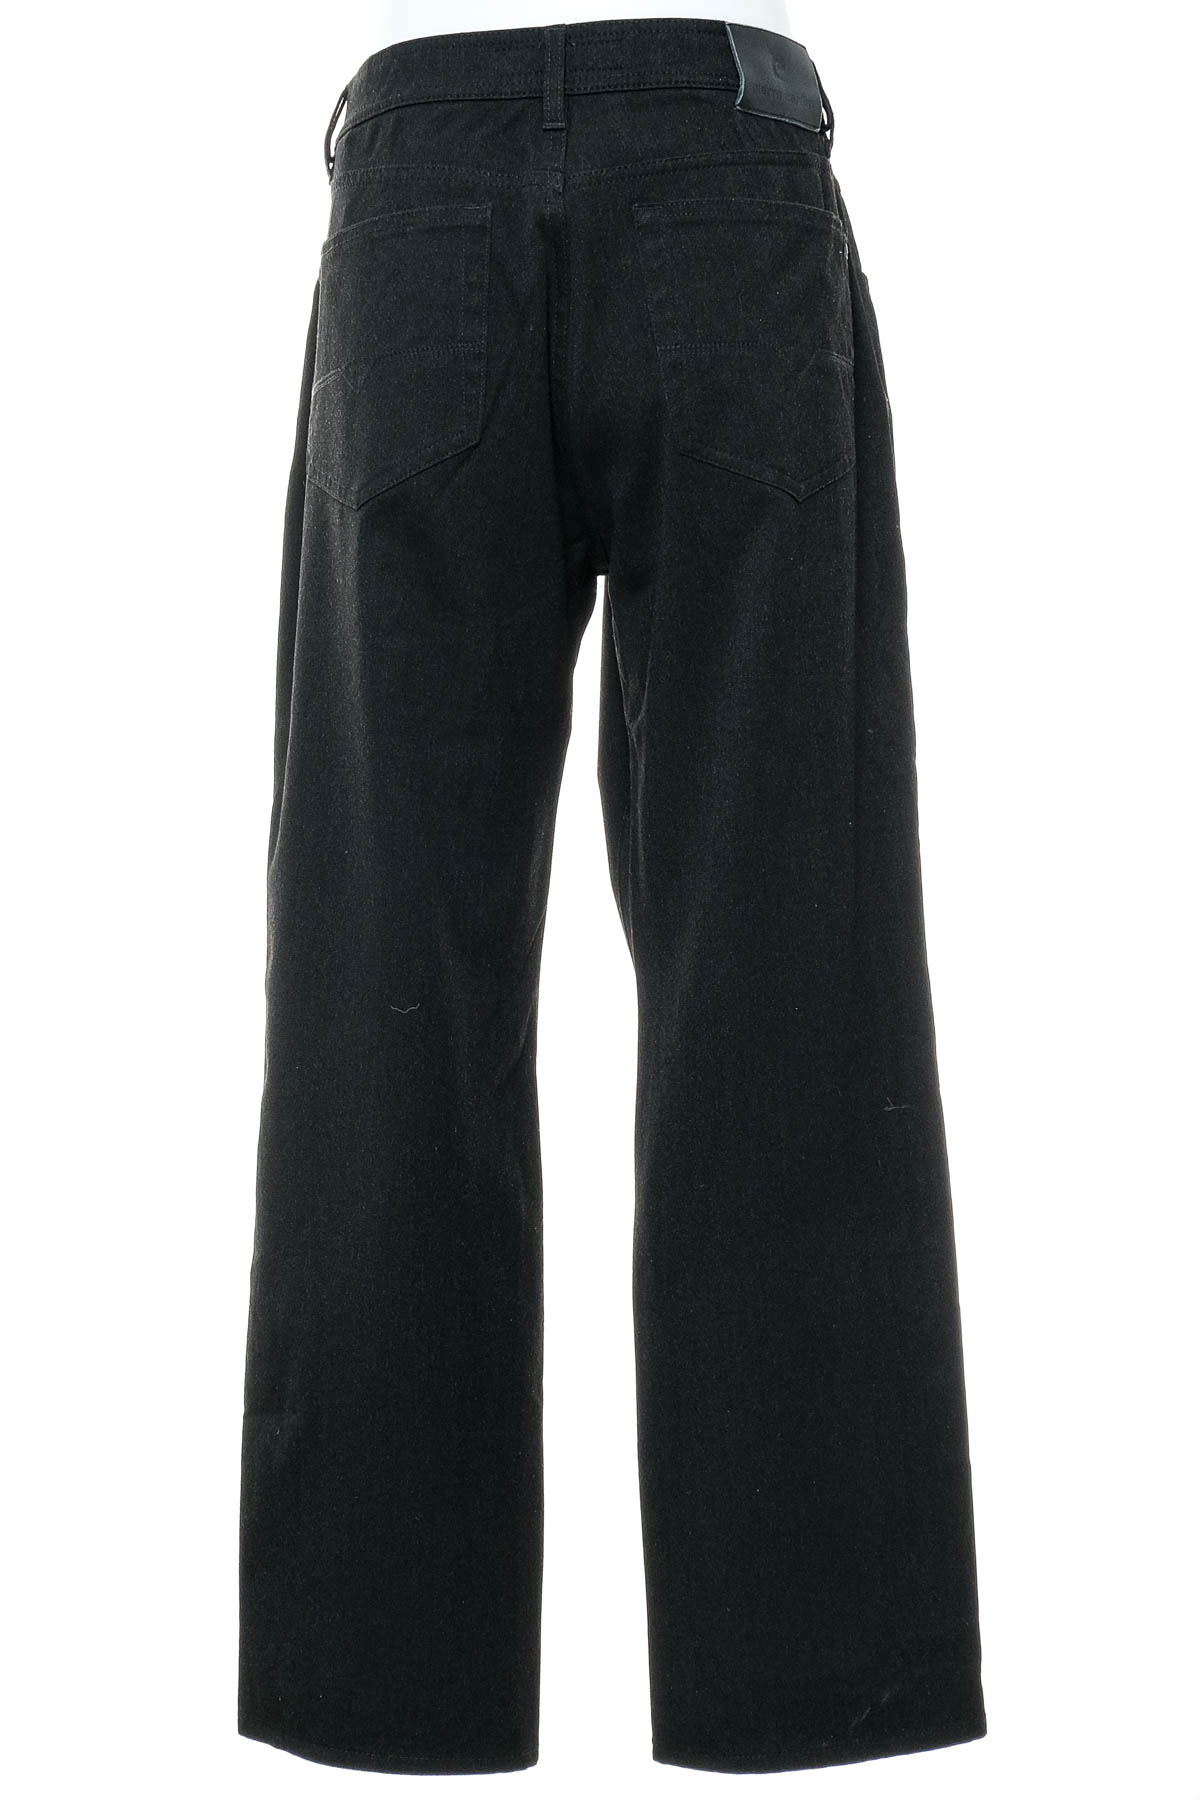 Men's trousers - Pierre Cardin - 1